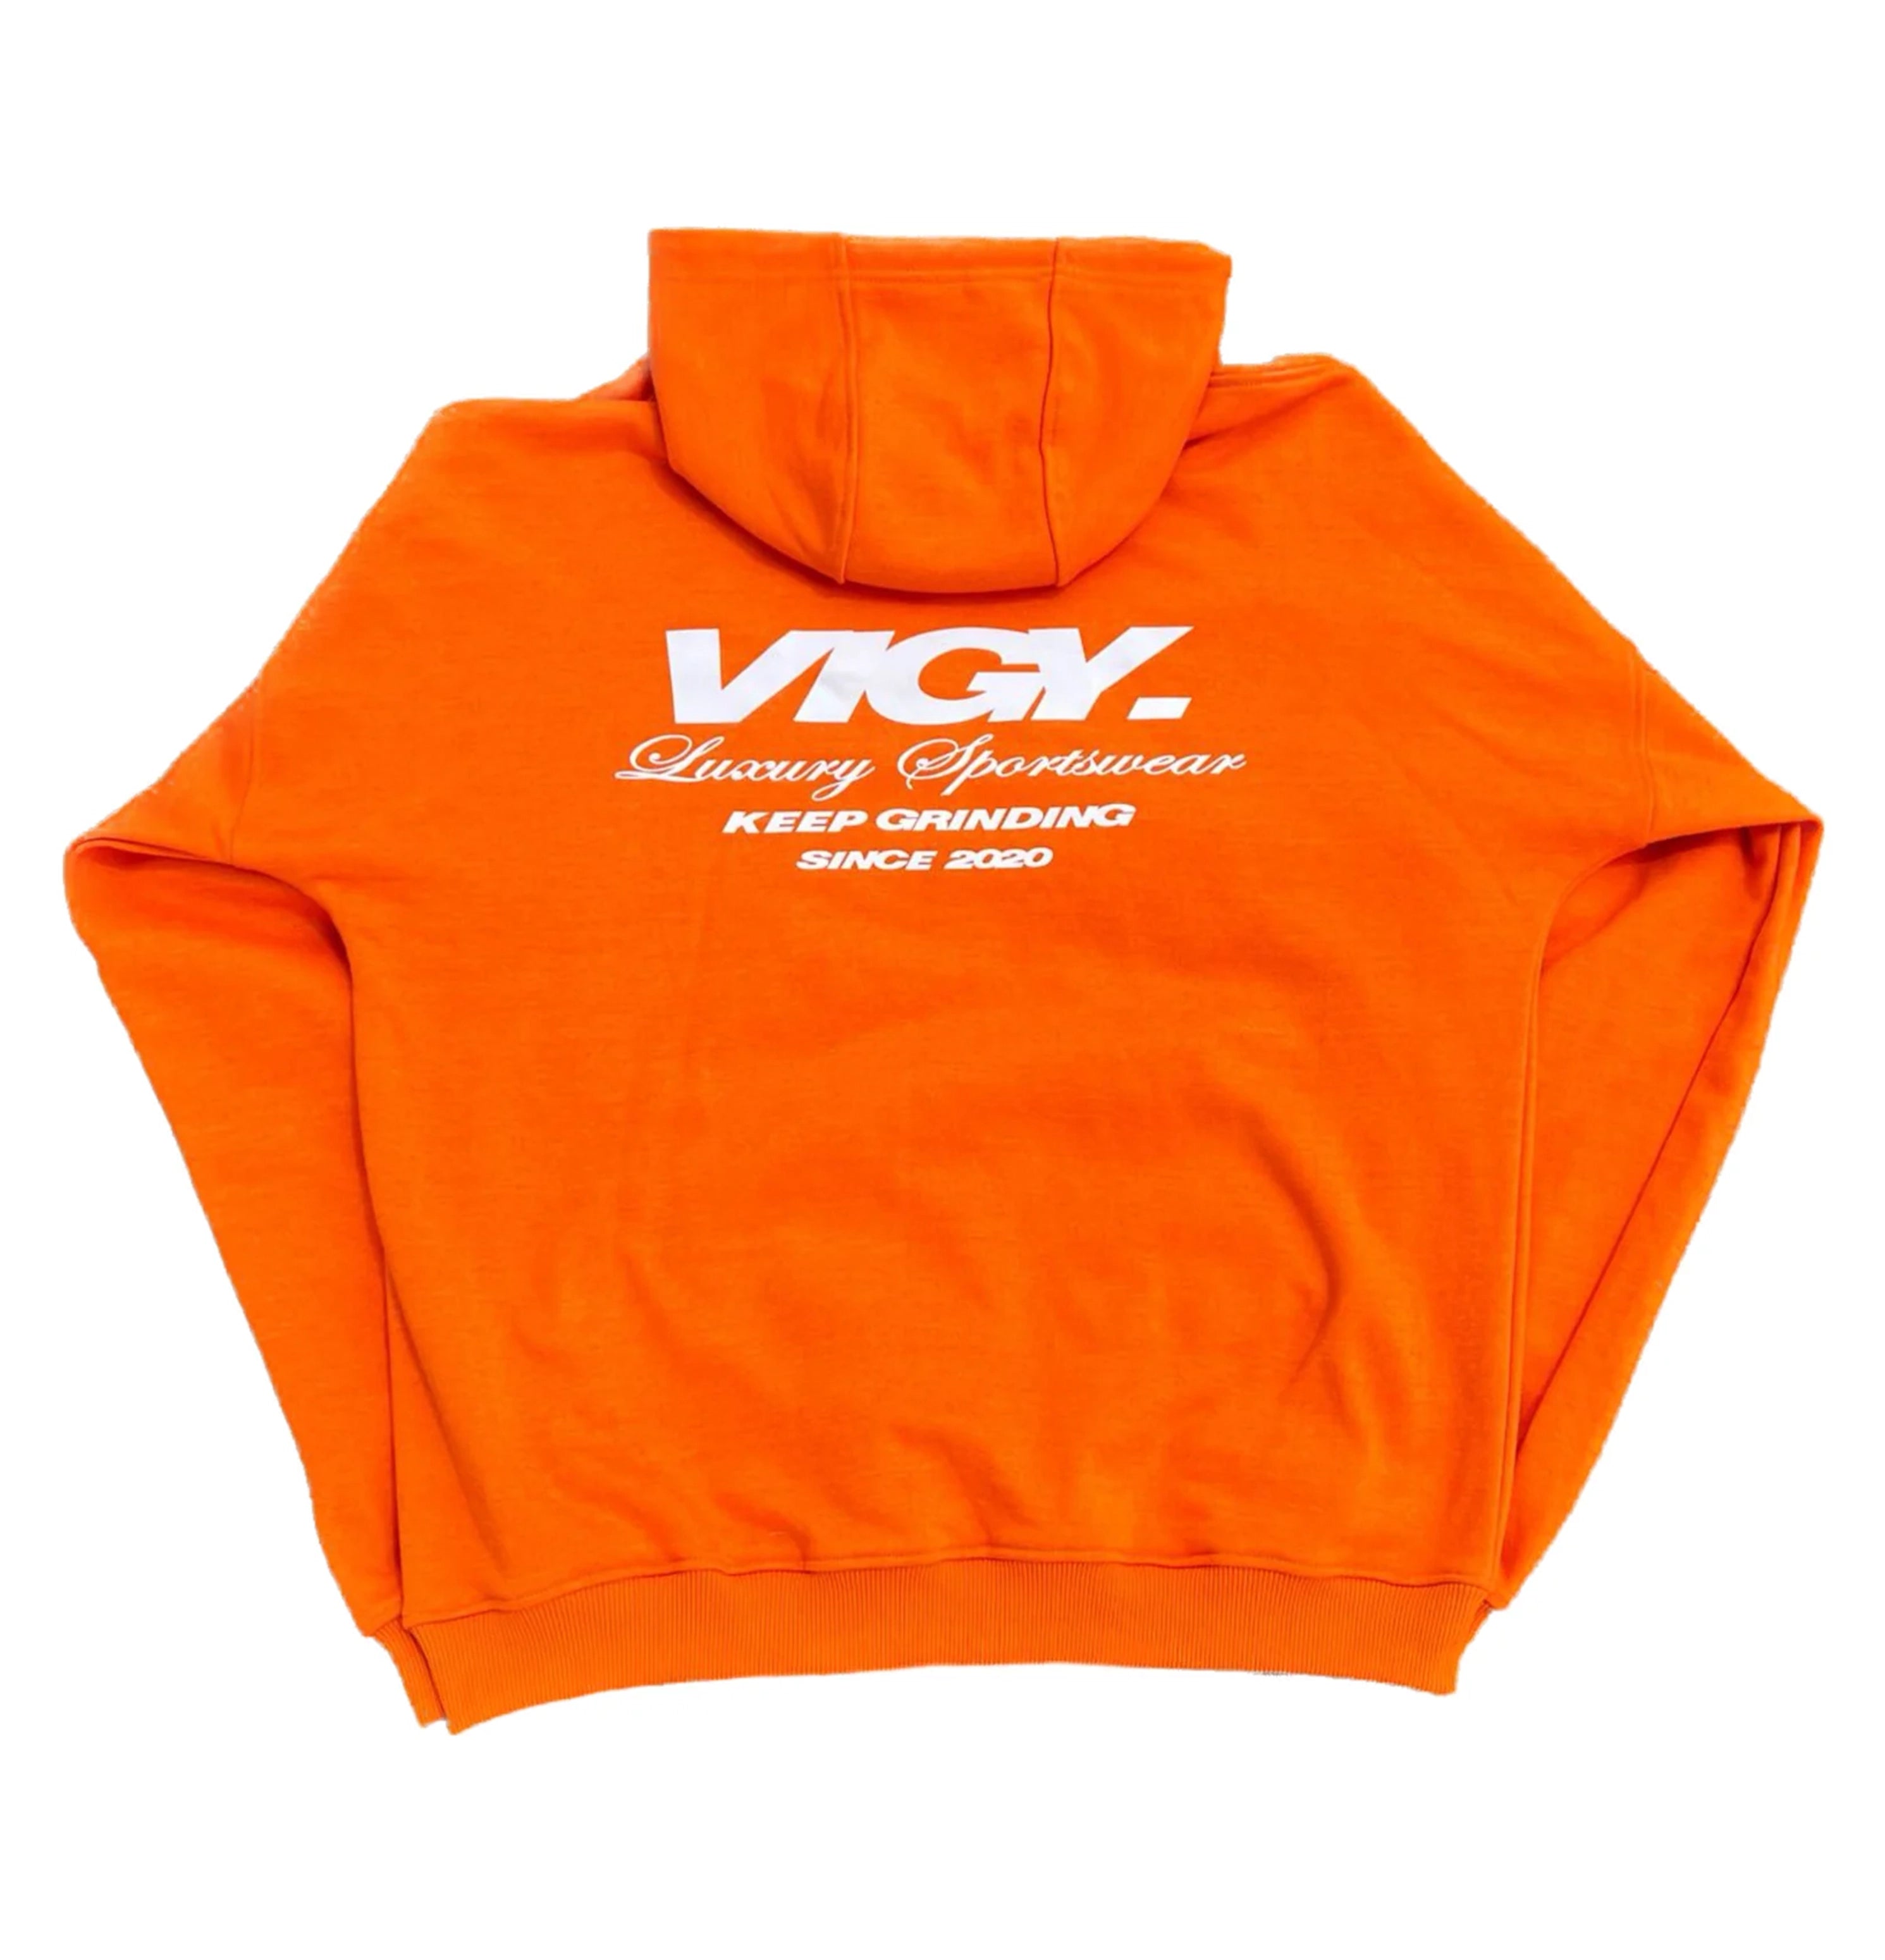 VIGY PROJECT Orange hoodie